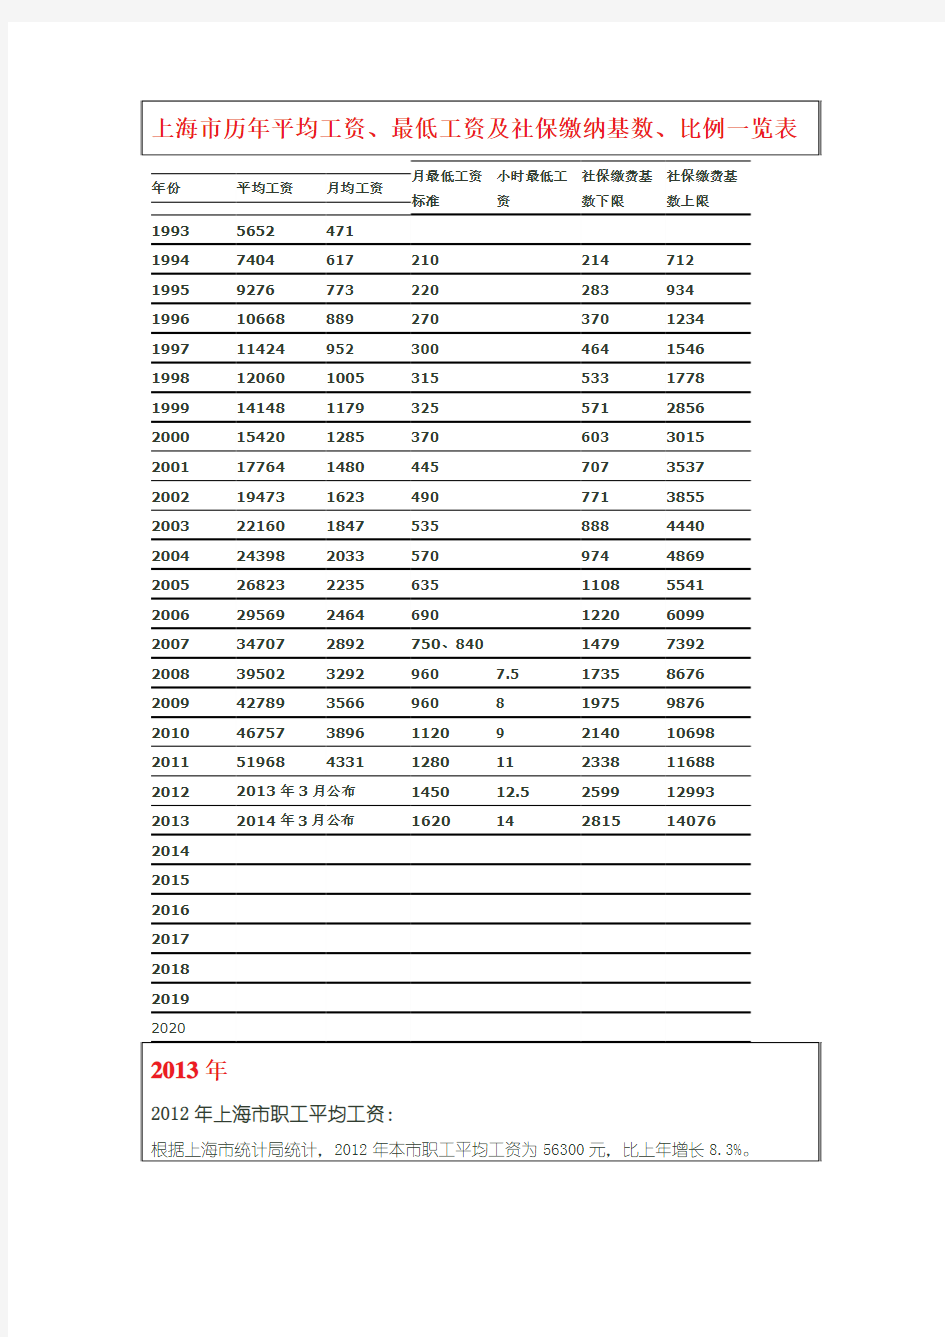 上海市历年平均工资